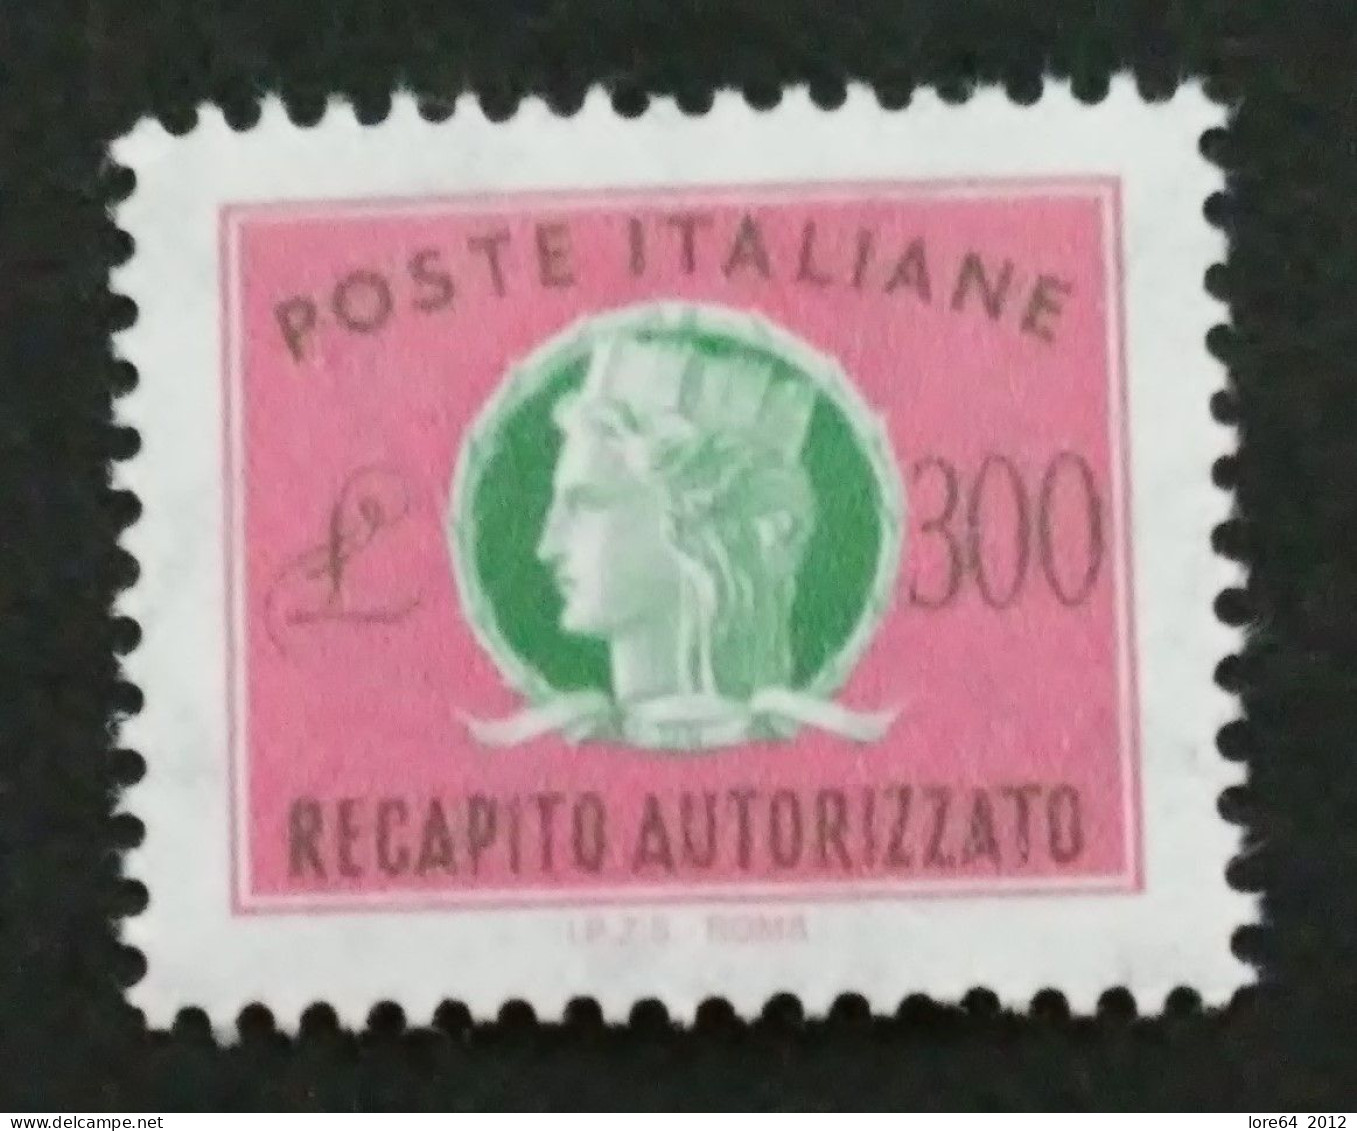 ITALIA 1987 - Recapito Autorizzato N° Catalogo Unificato 17 Nuovo** - Correo Urgente/neumático